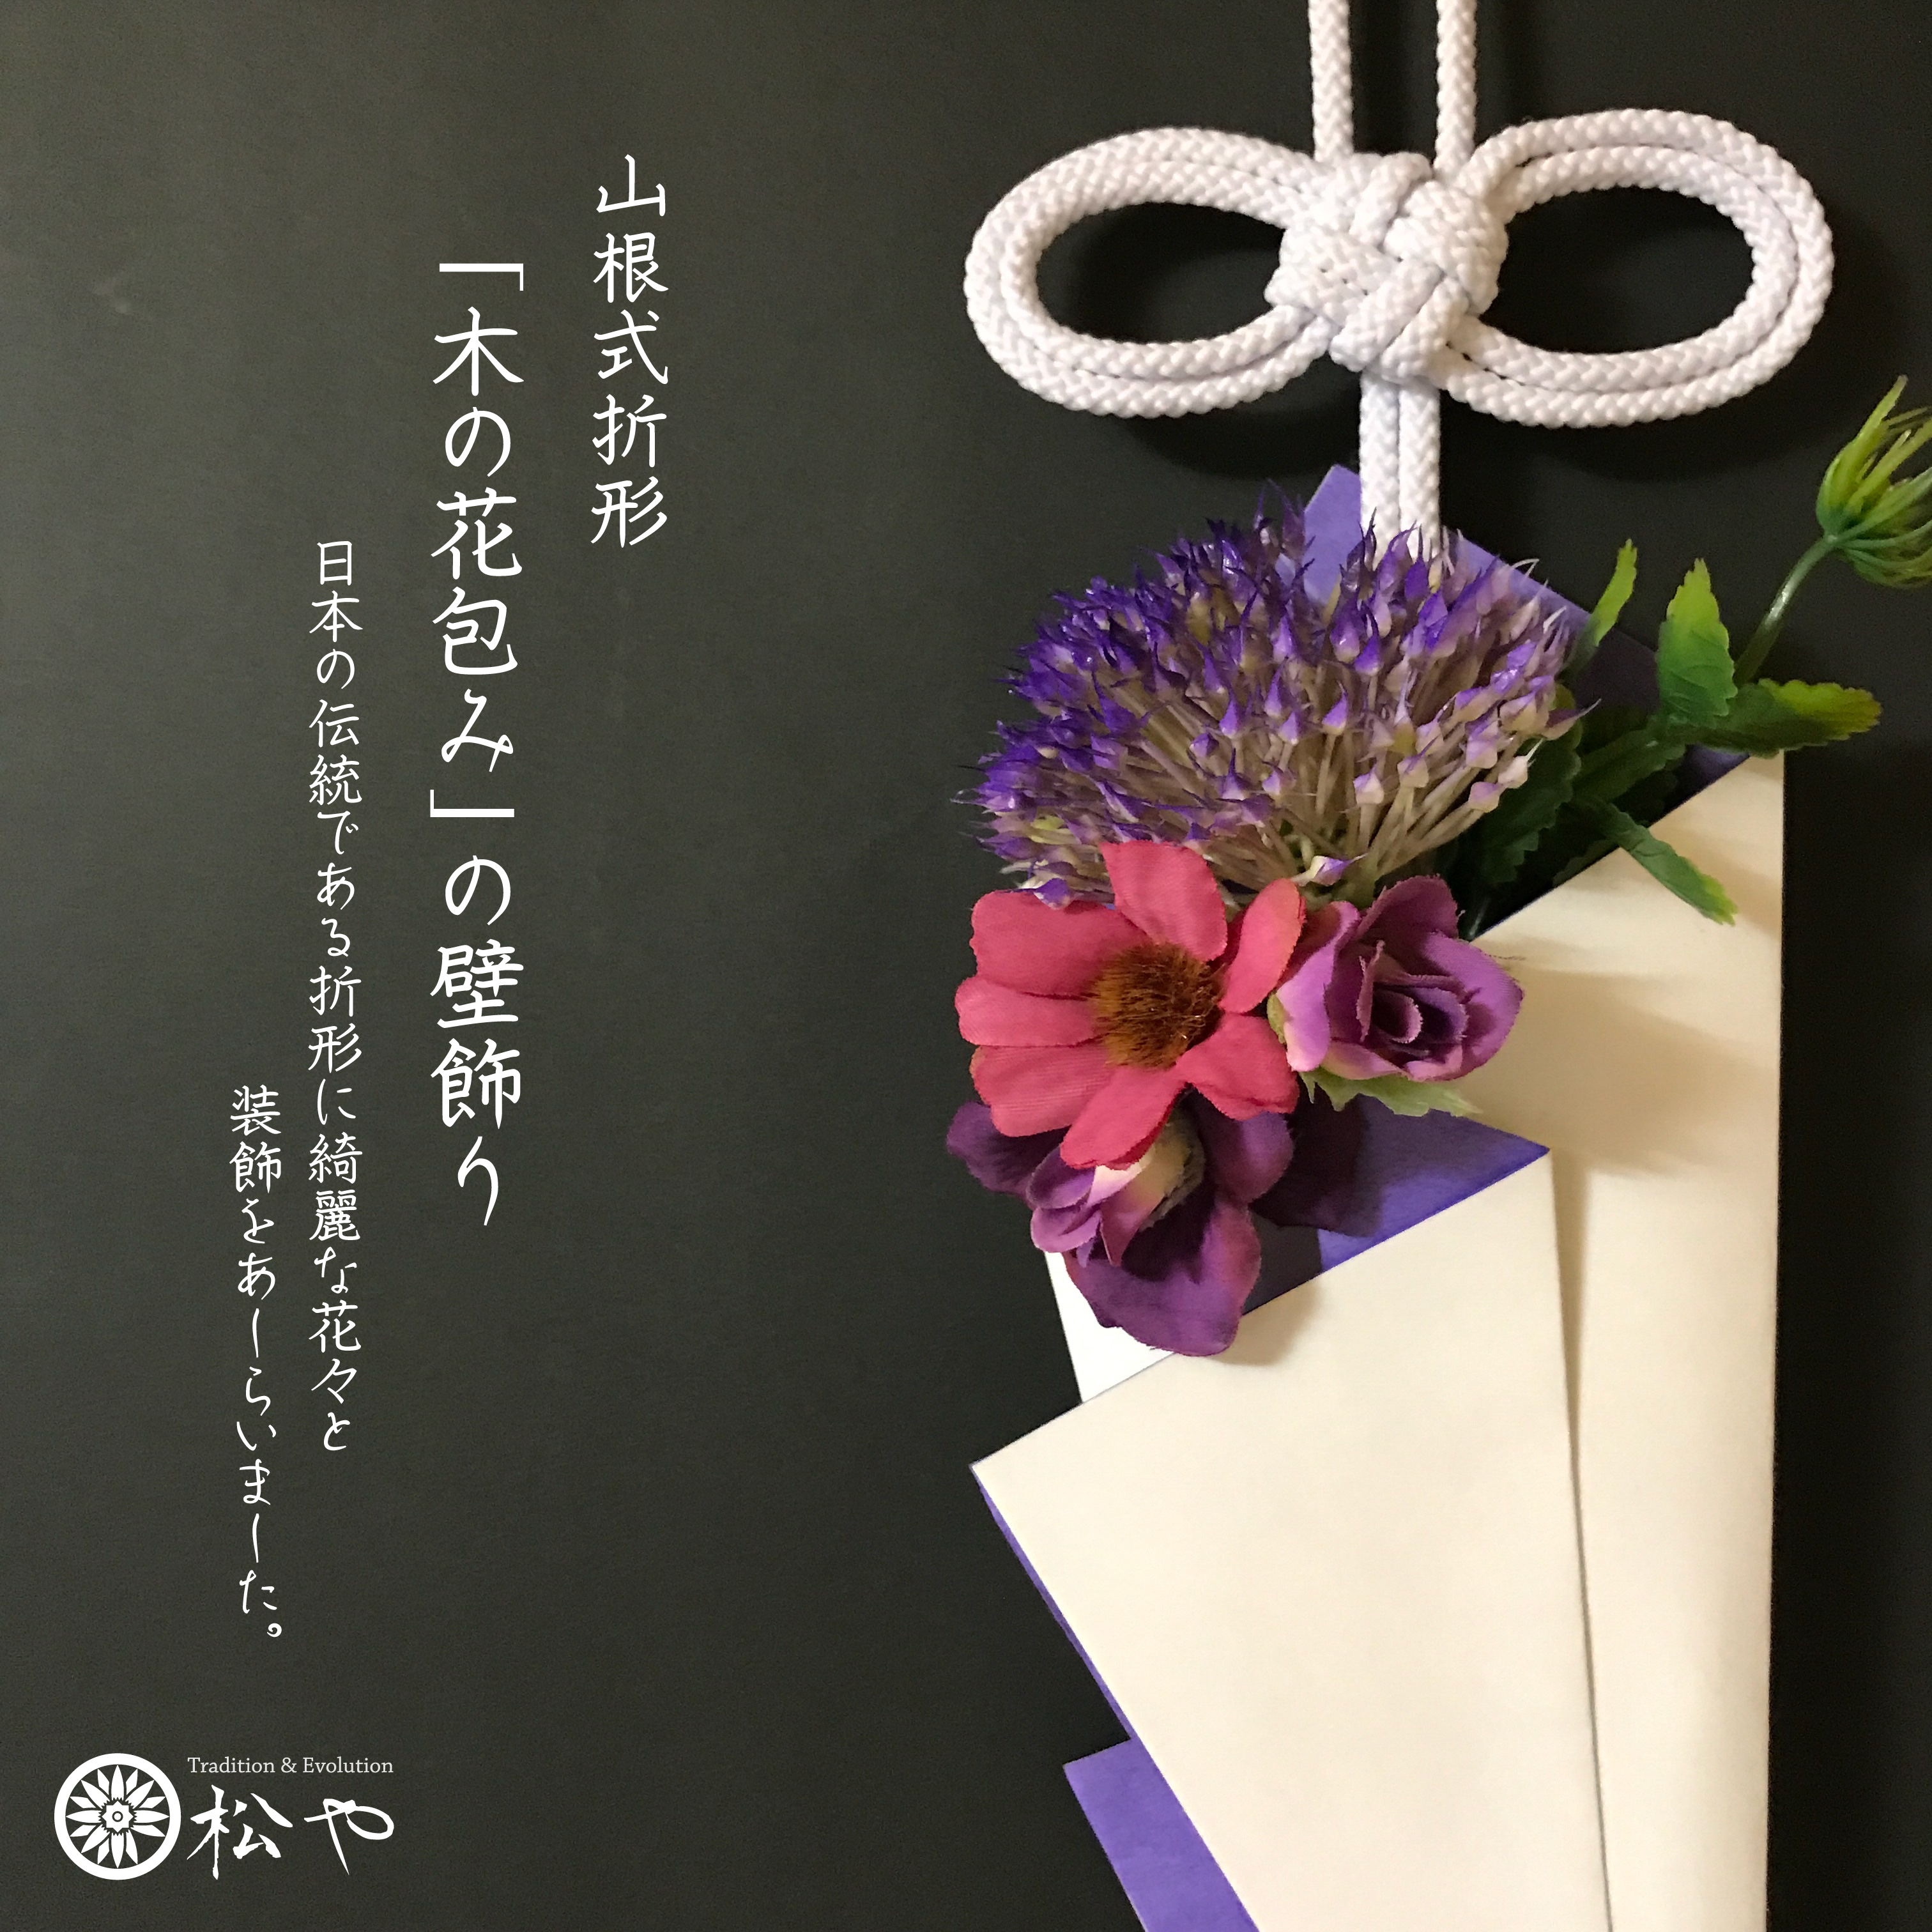 木の花包みの壁飾り Iichi ハンドメイド クラフト作品 手仕事品の通販